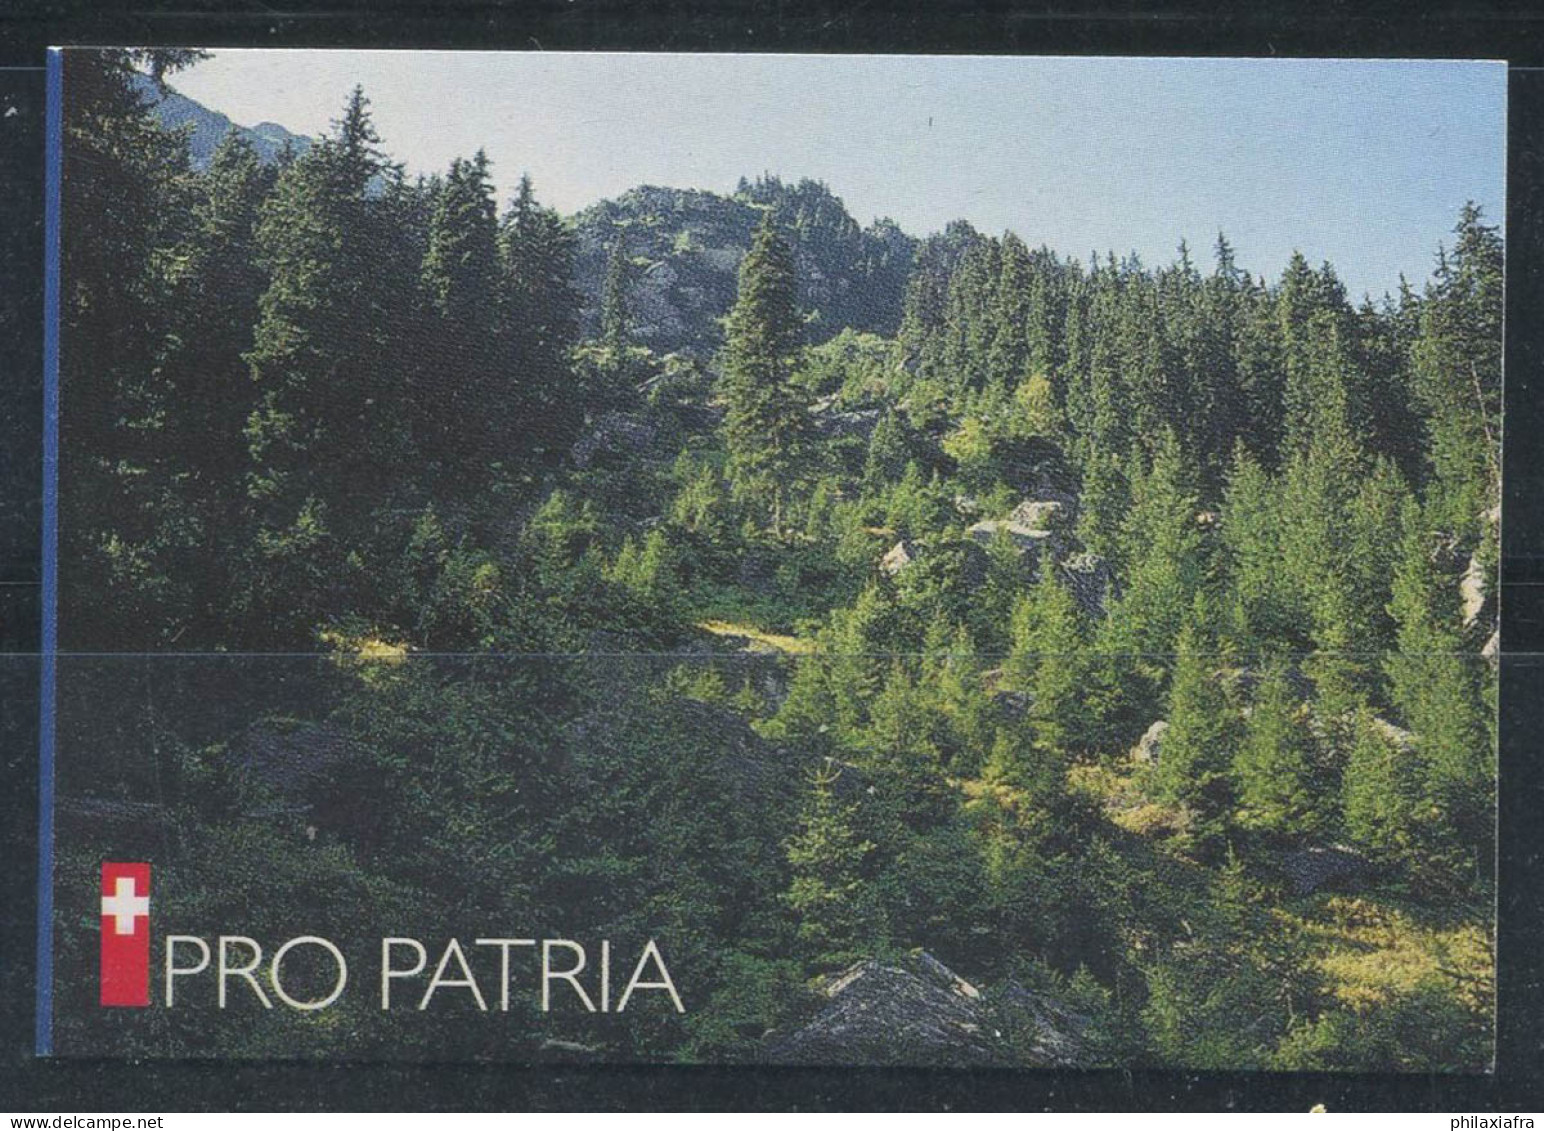 Suisse 1998 Mi. MH 0-110 Carnet 100% Pro Patria Oblitéré - Libretti